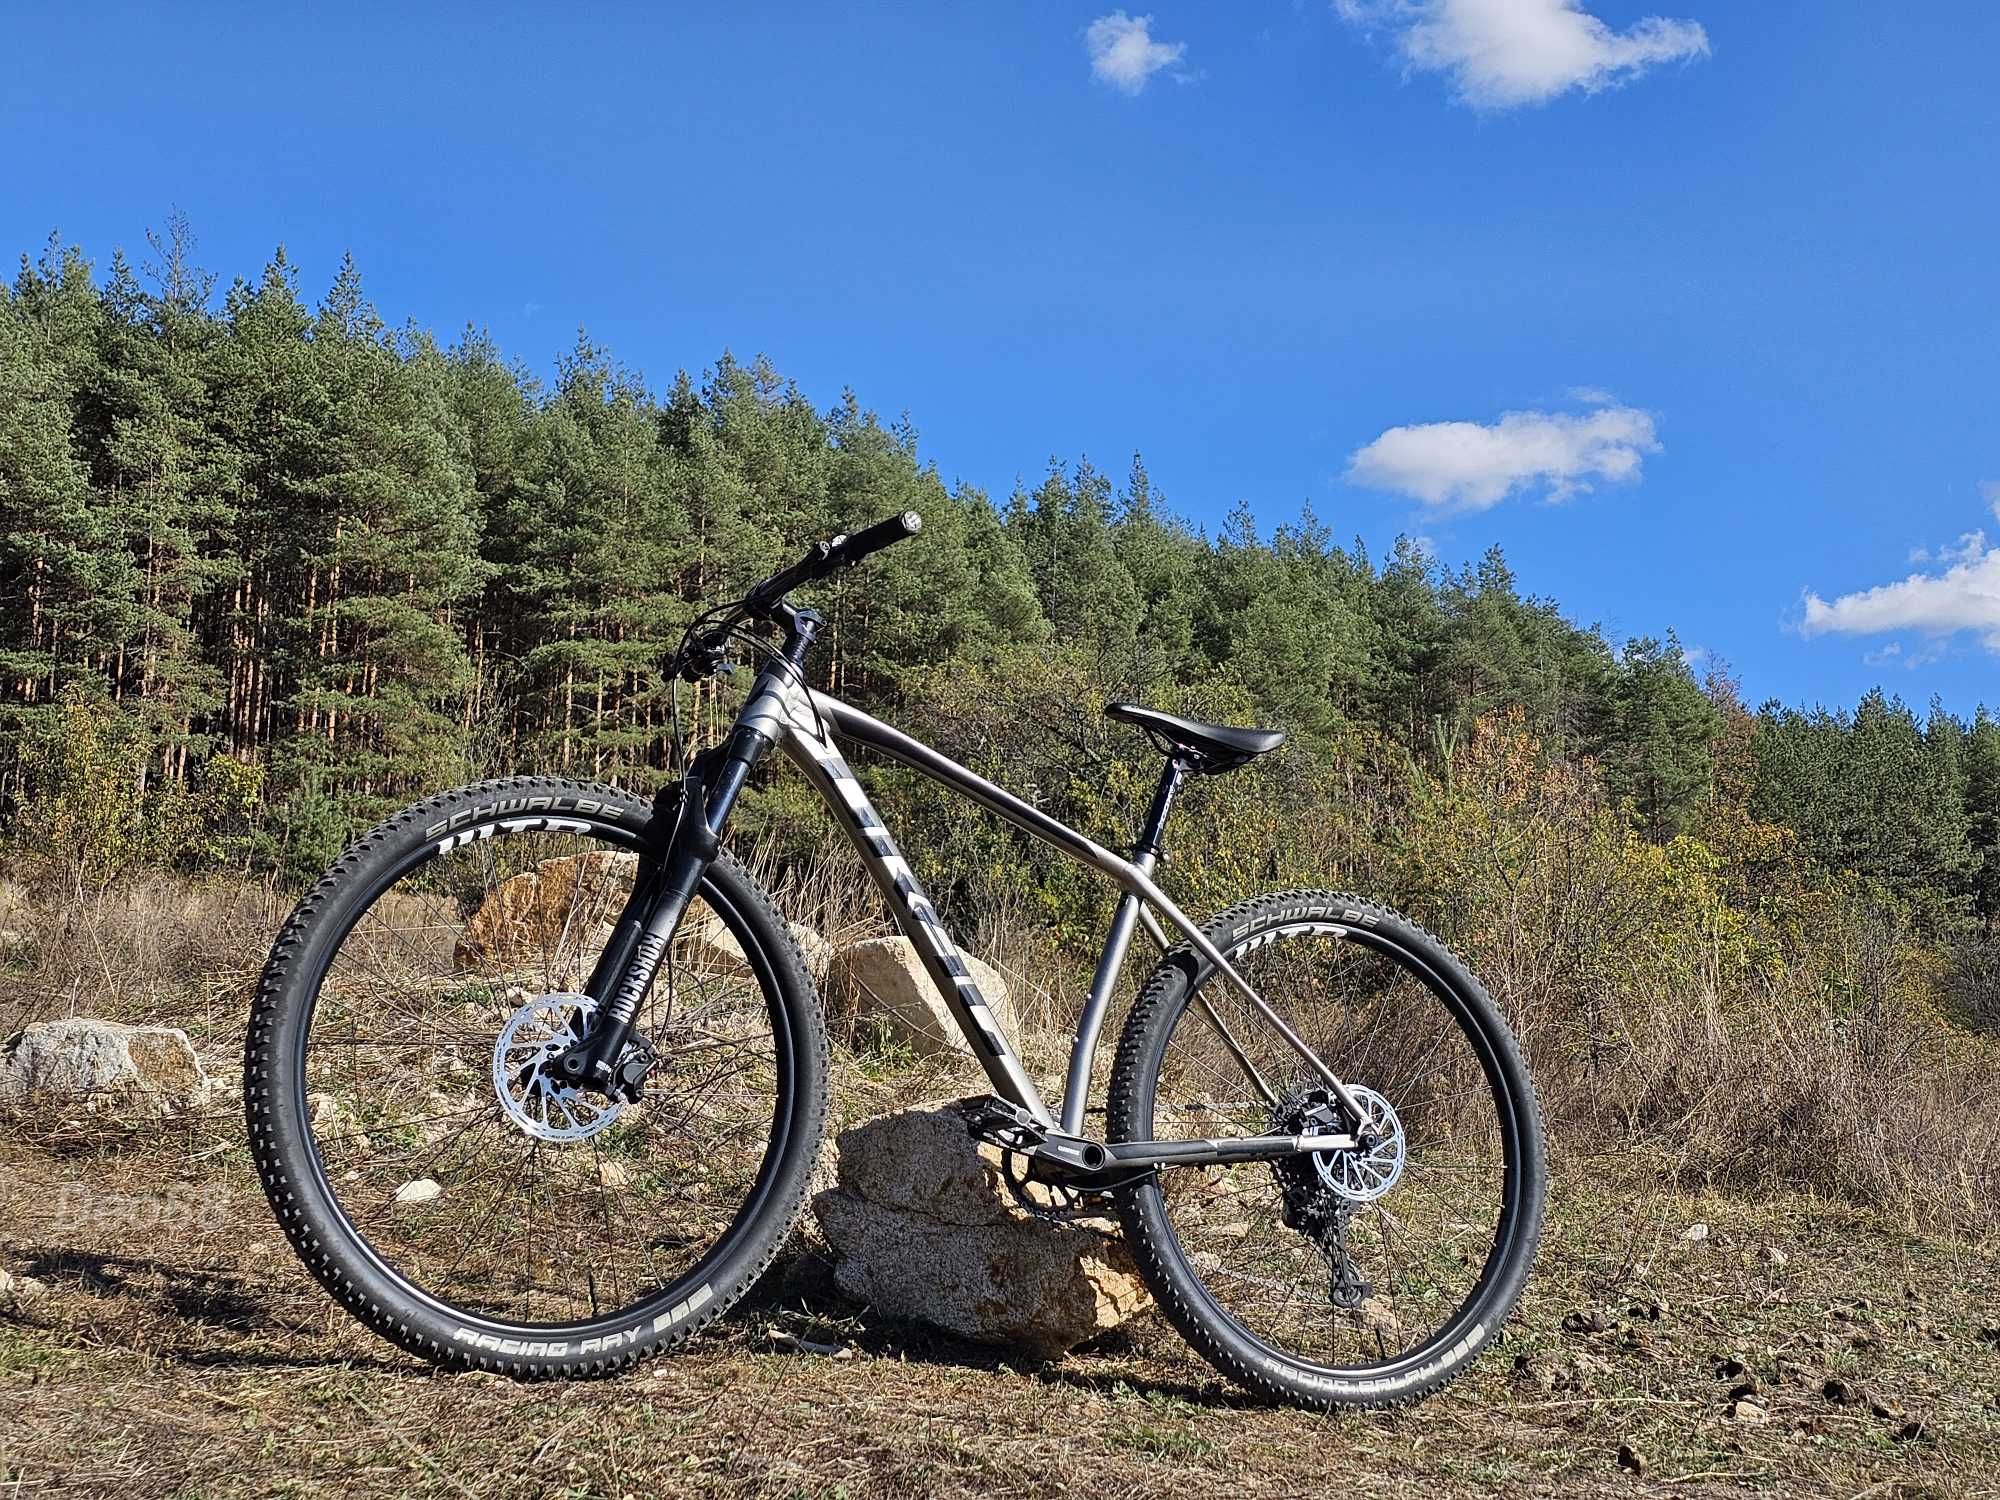 Планински велосипед Drag Trigger 9.0 , 29" твърдак , L , Tubeless